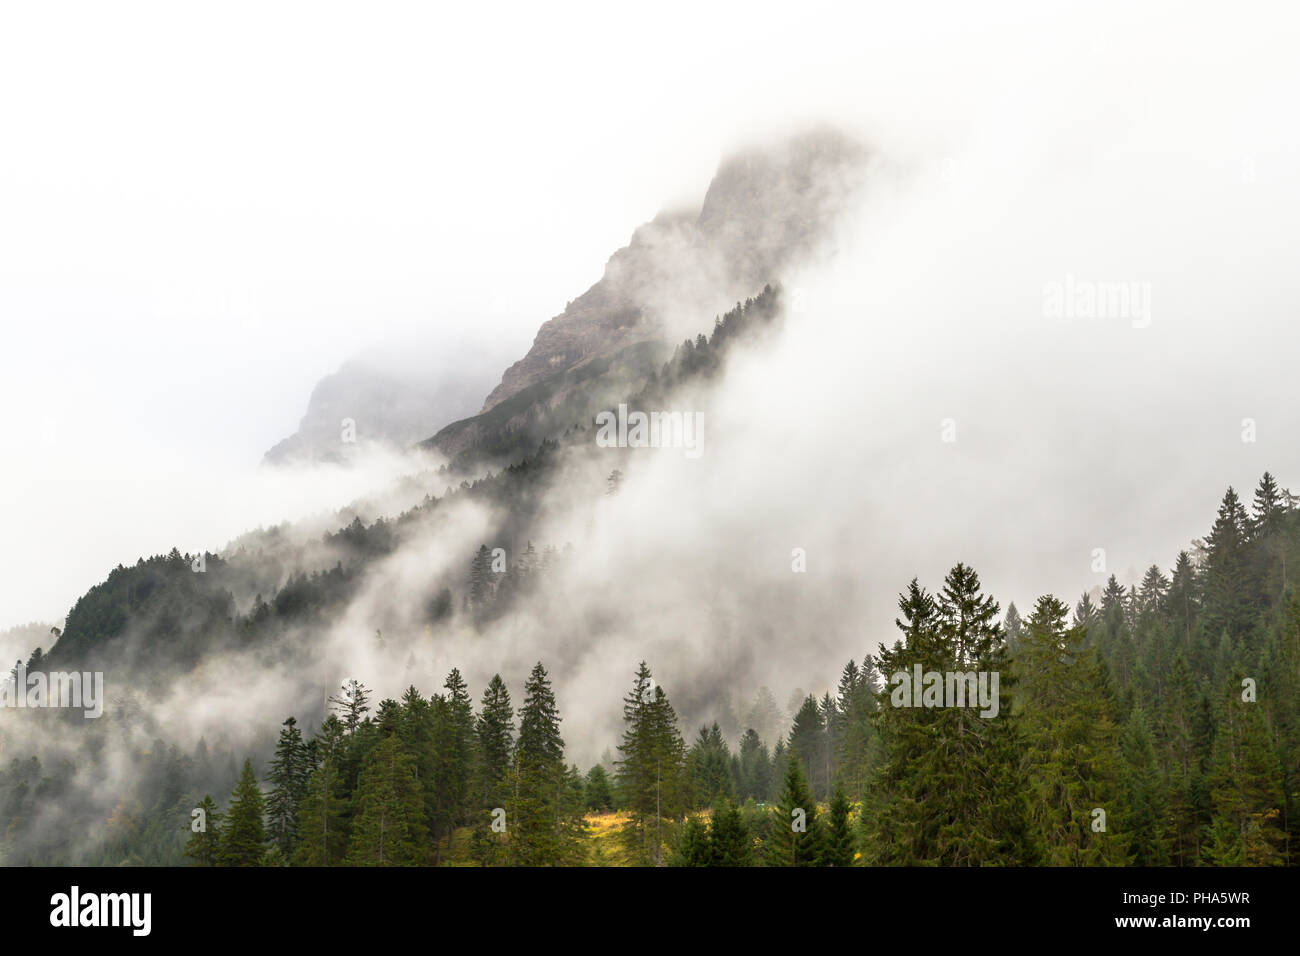 Mountain peaks in mist, Hinterhornbachtal, Austria Stock Photo